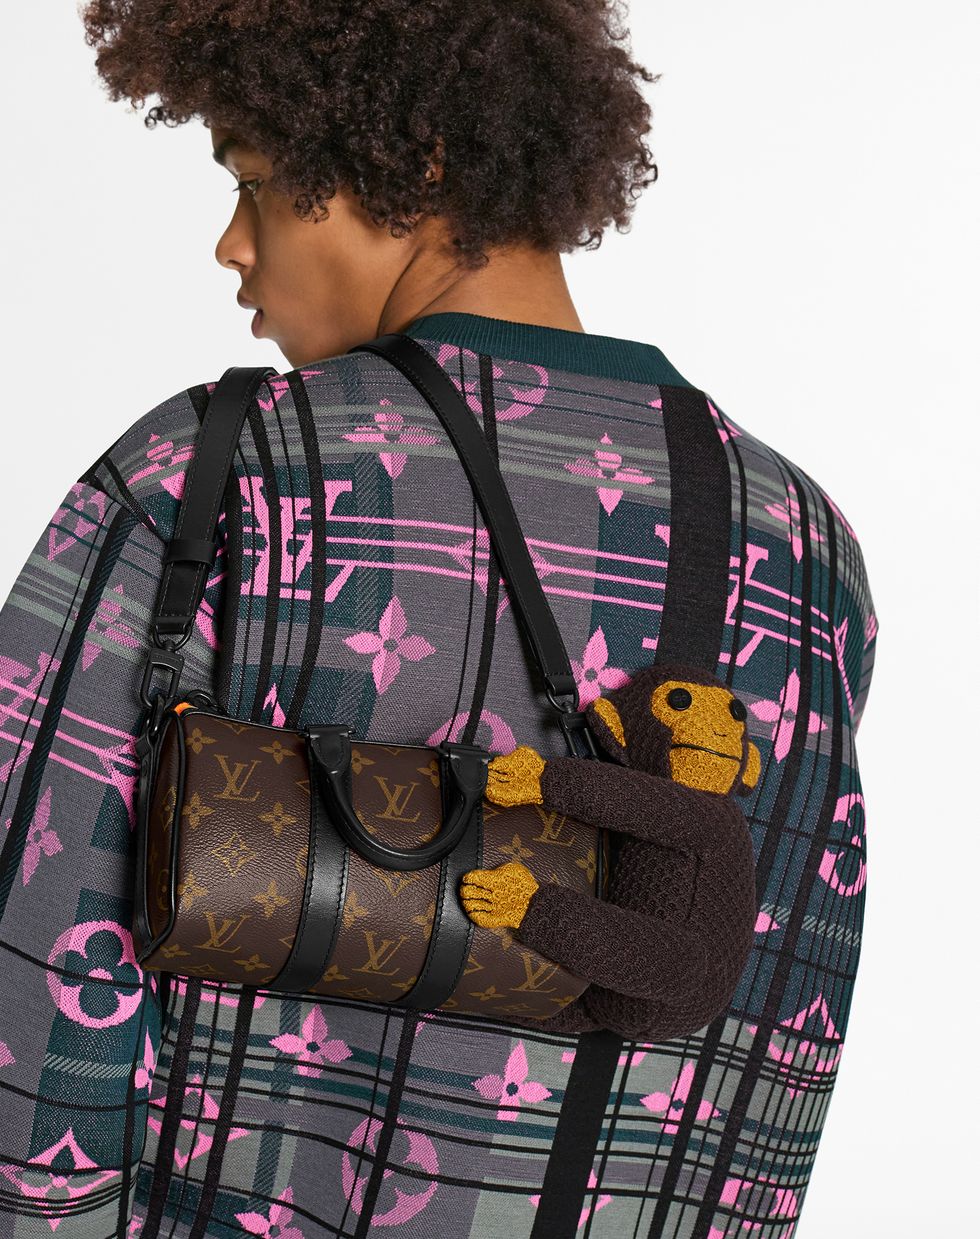 Louis Vuitton lancia le borse extrasmall anche per l'uomo